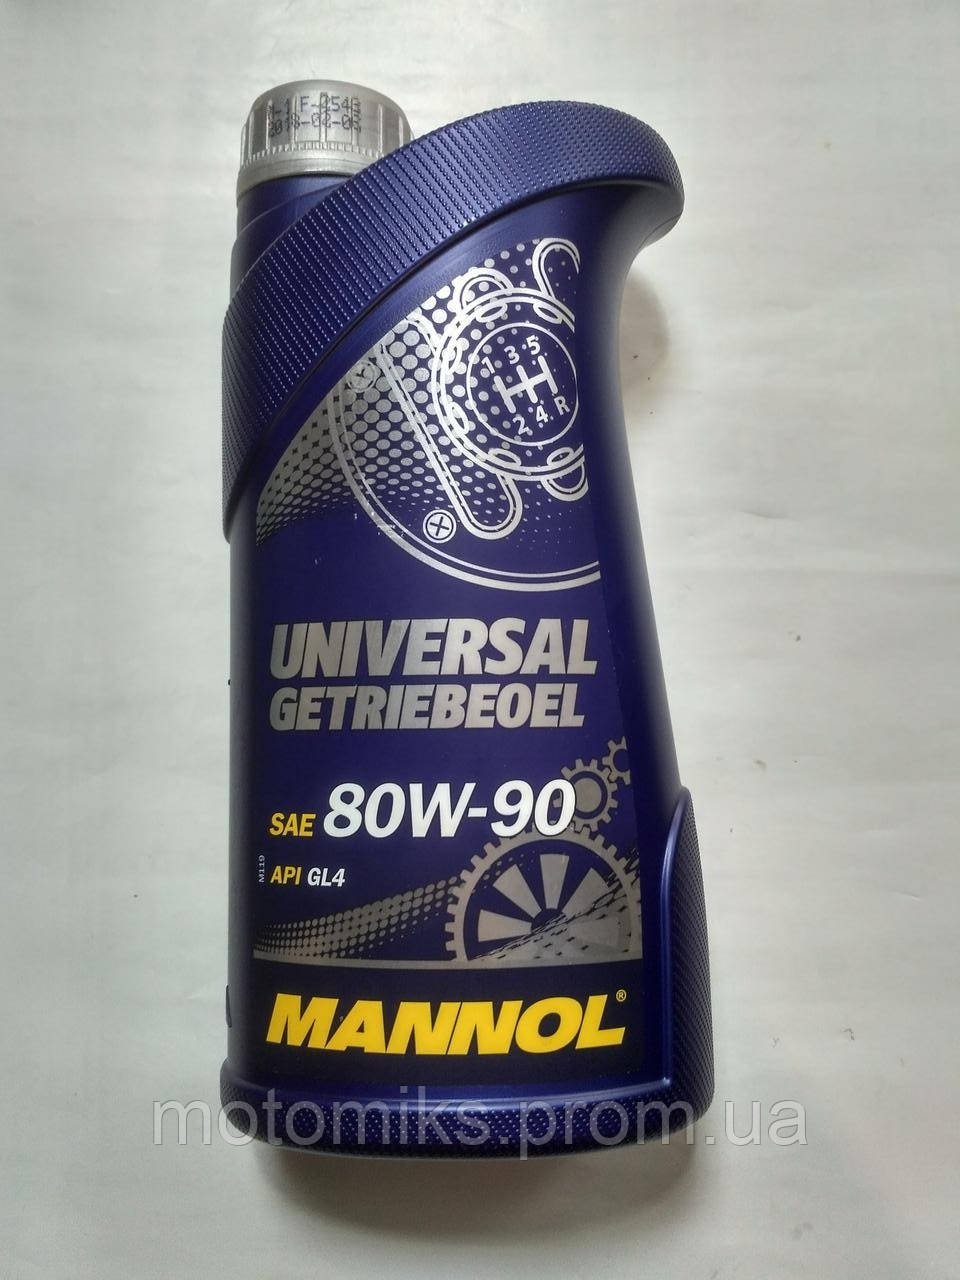 Масло трансмиссионное универсальное MANNOL SAE 80W-90, 1L (Германия .